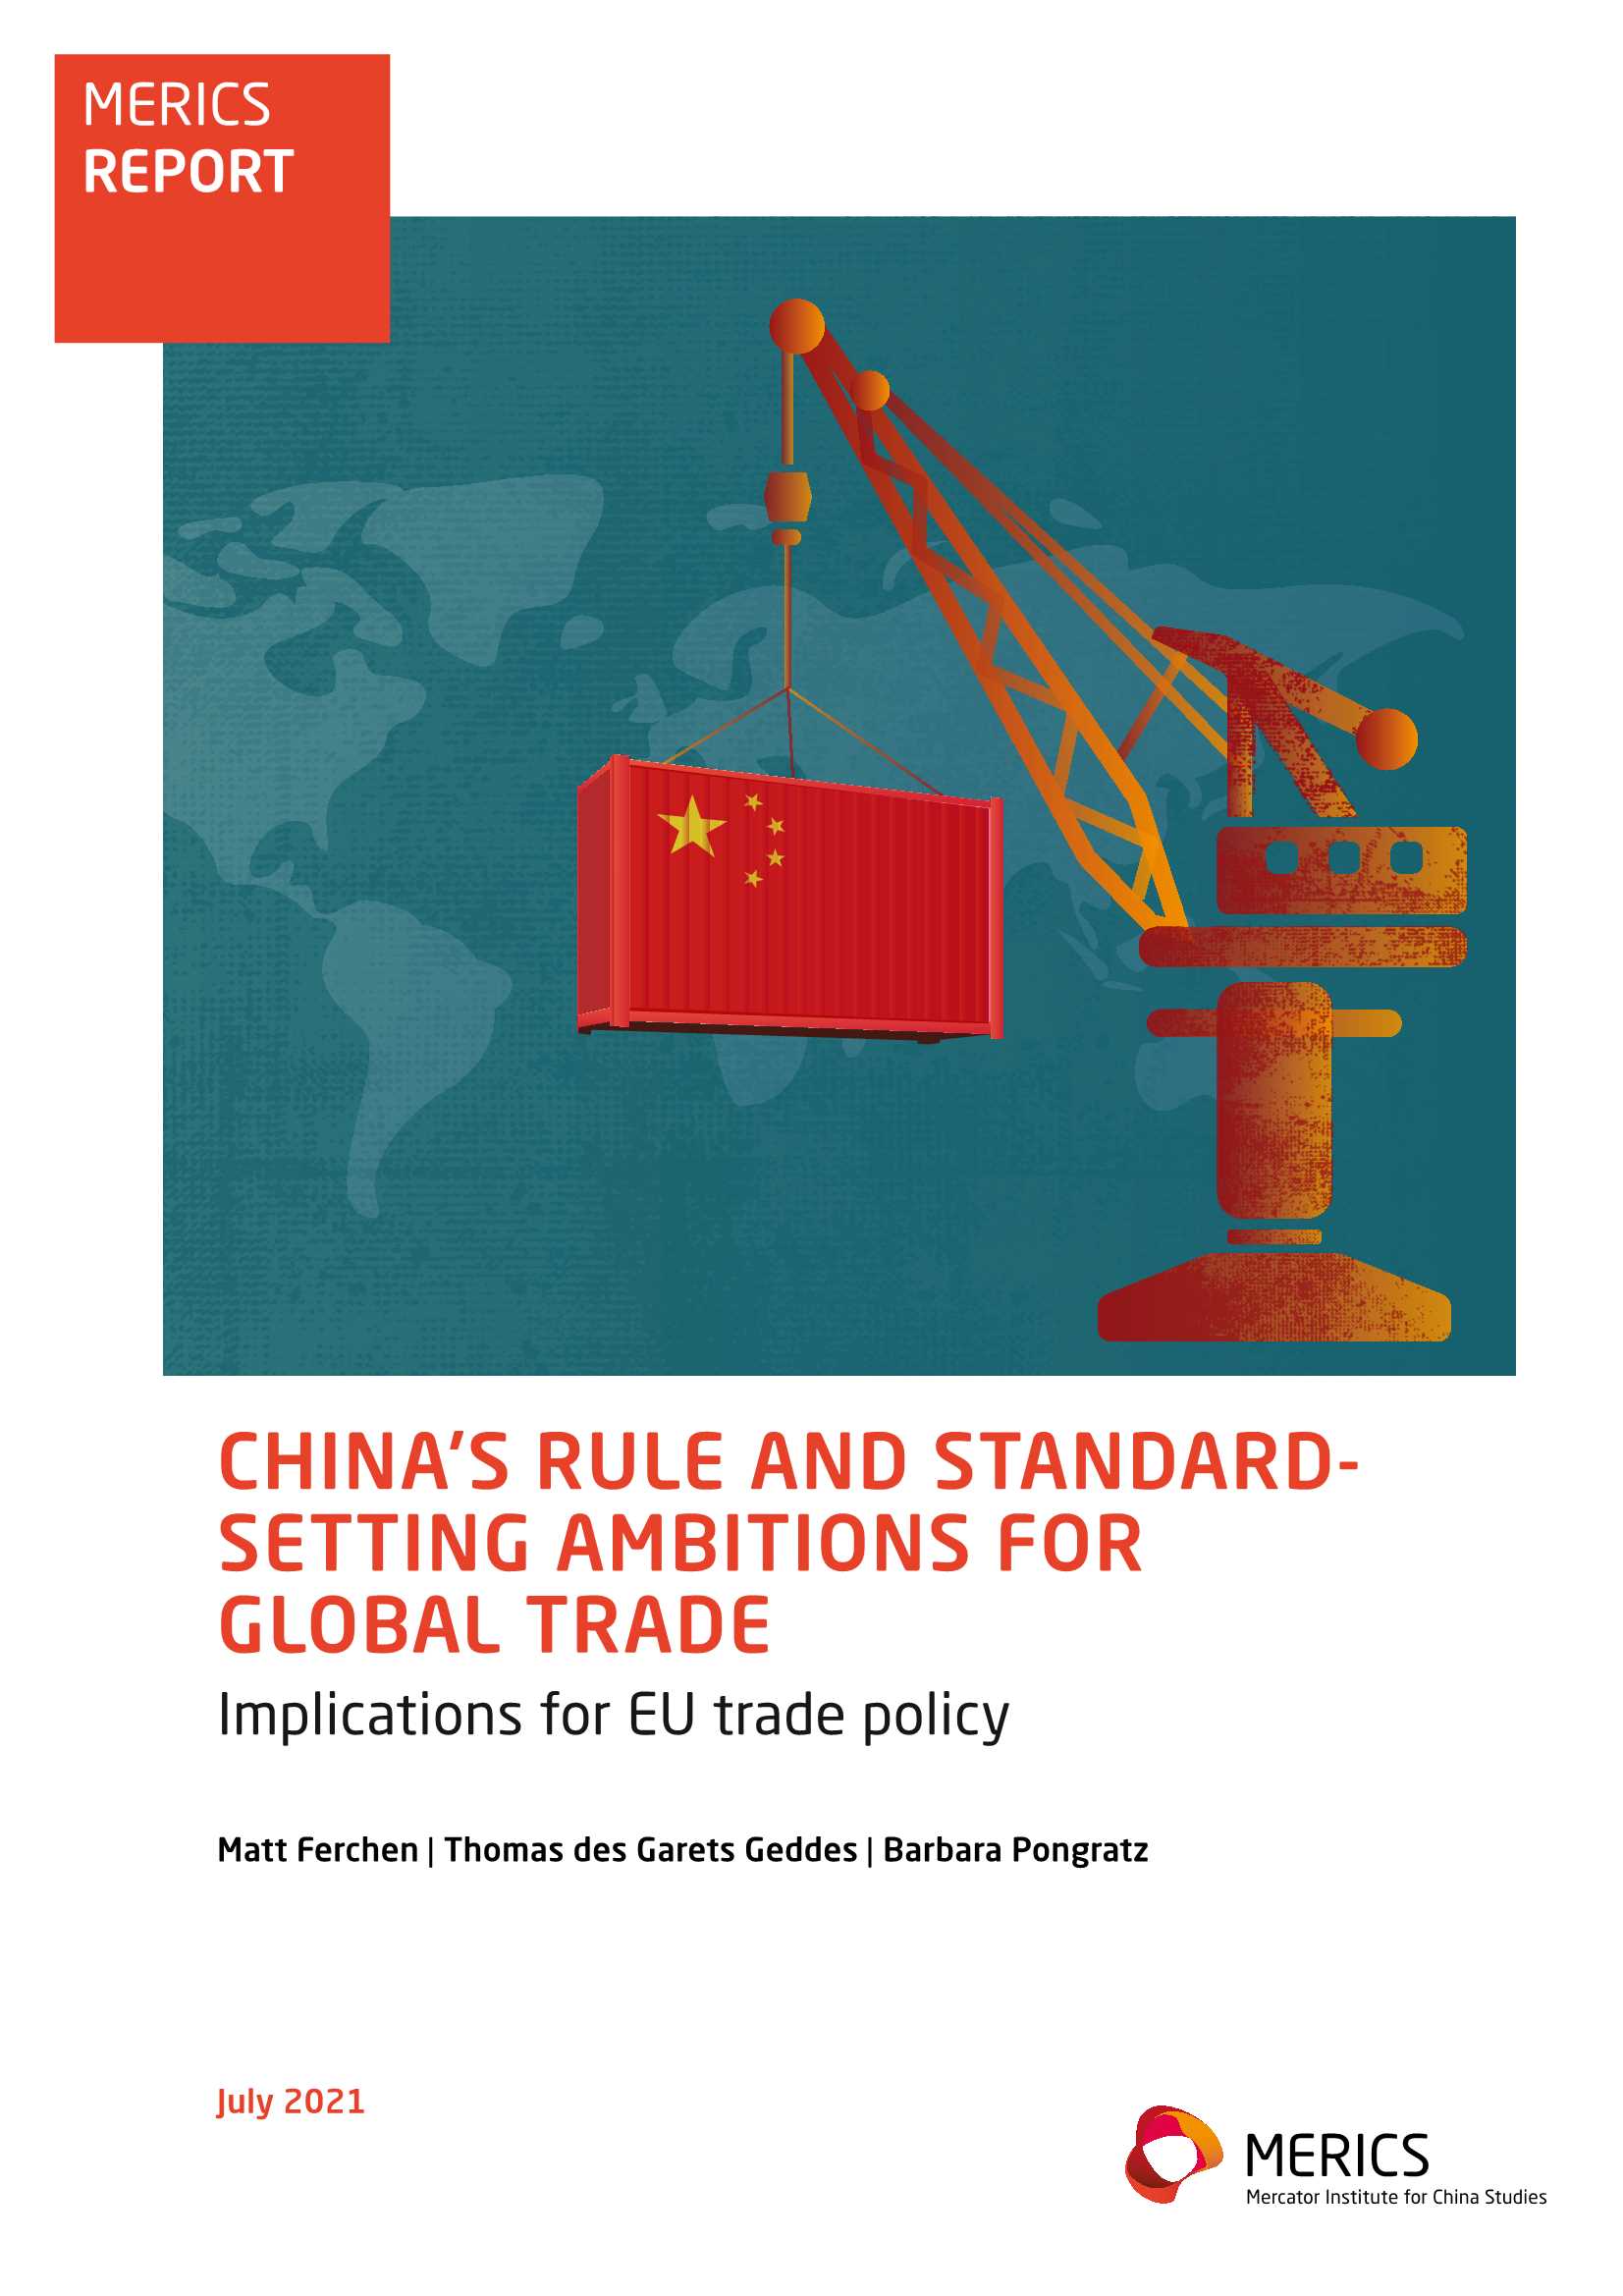 中国主导全球贸易规则和标准-墨卡托-2021.07-31页